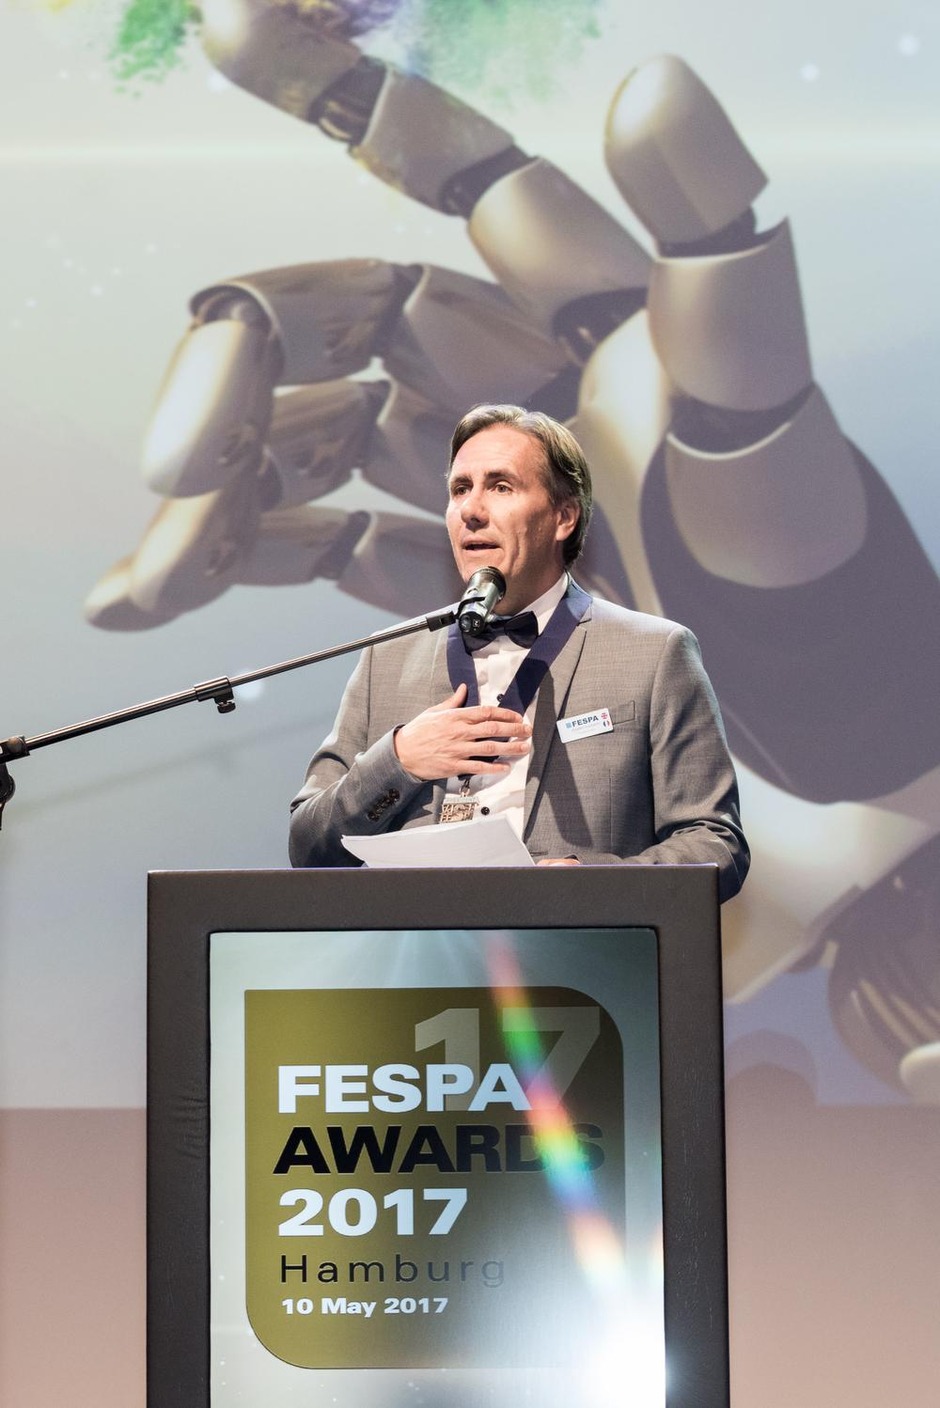 Christian Duyckaerts est le 17ème Président de Fespa